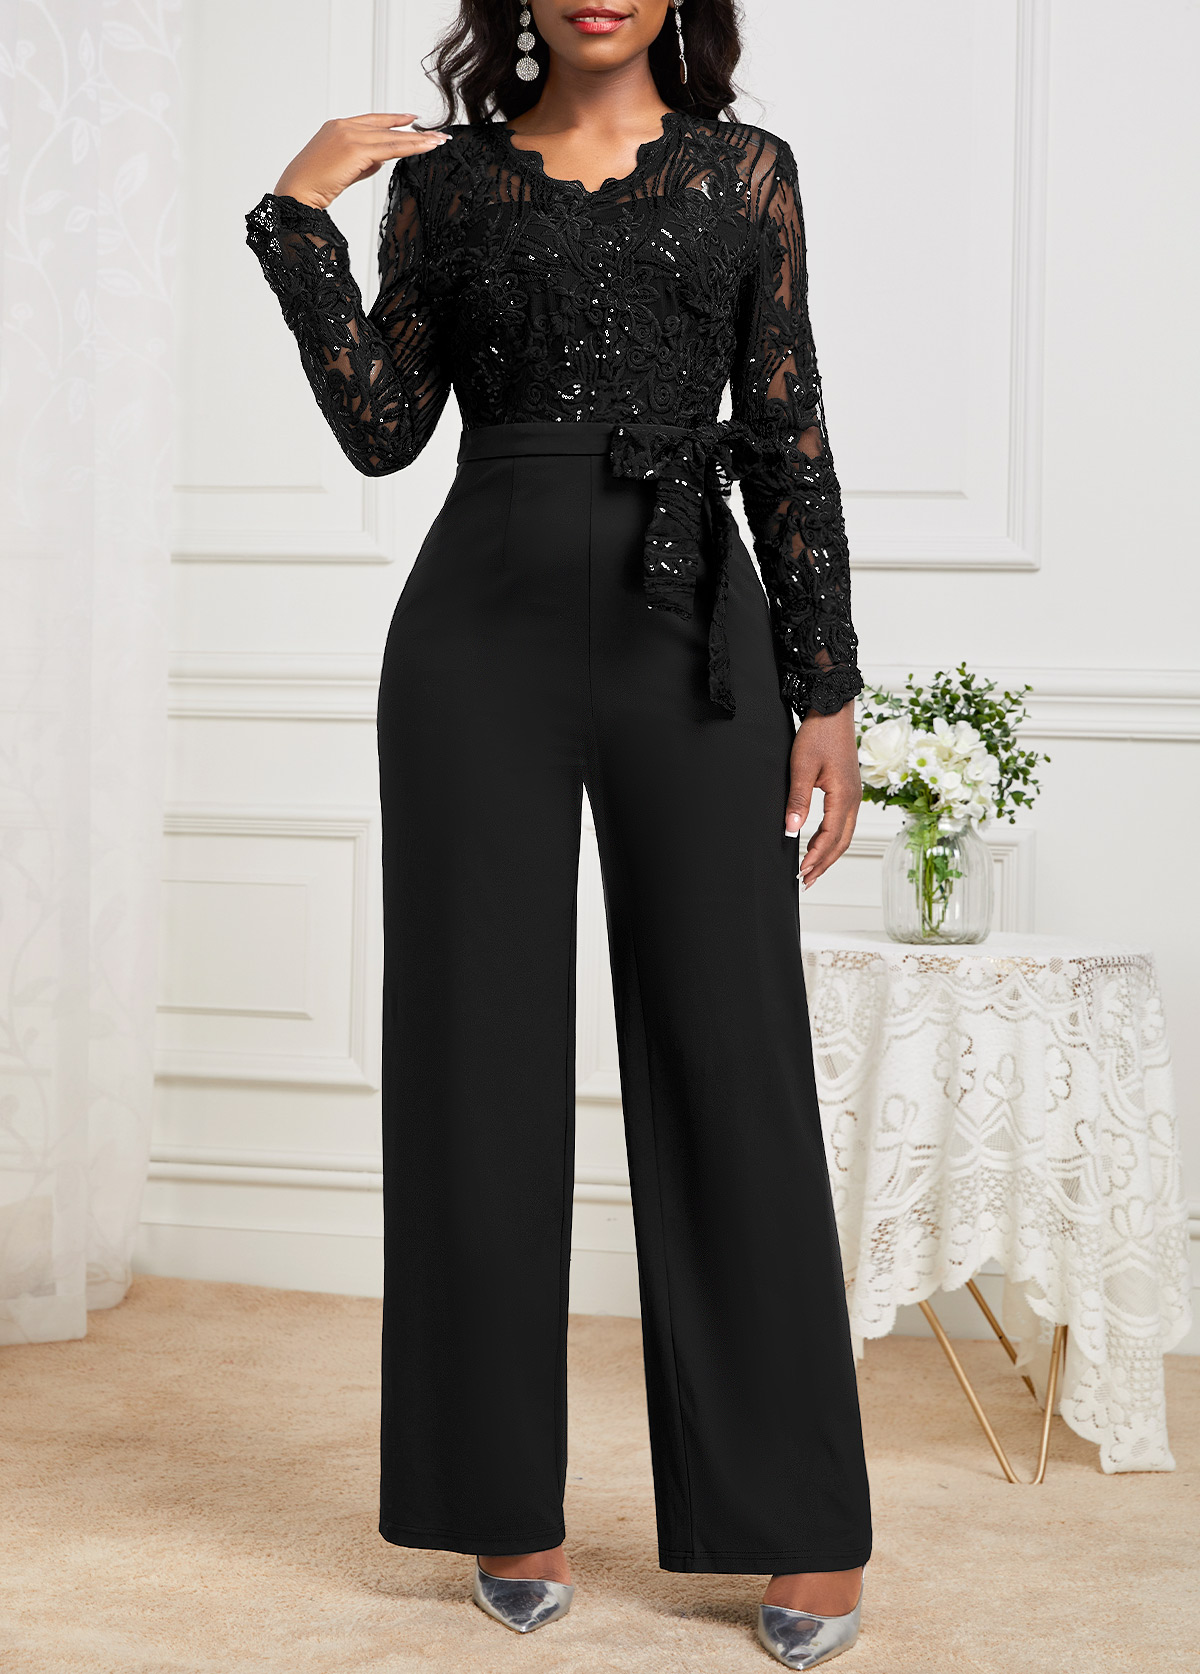 Lace Belted Black Long V Neck Jumpsuit | Rosewe.com - USD $46.98